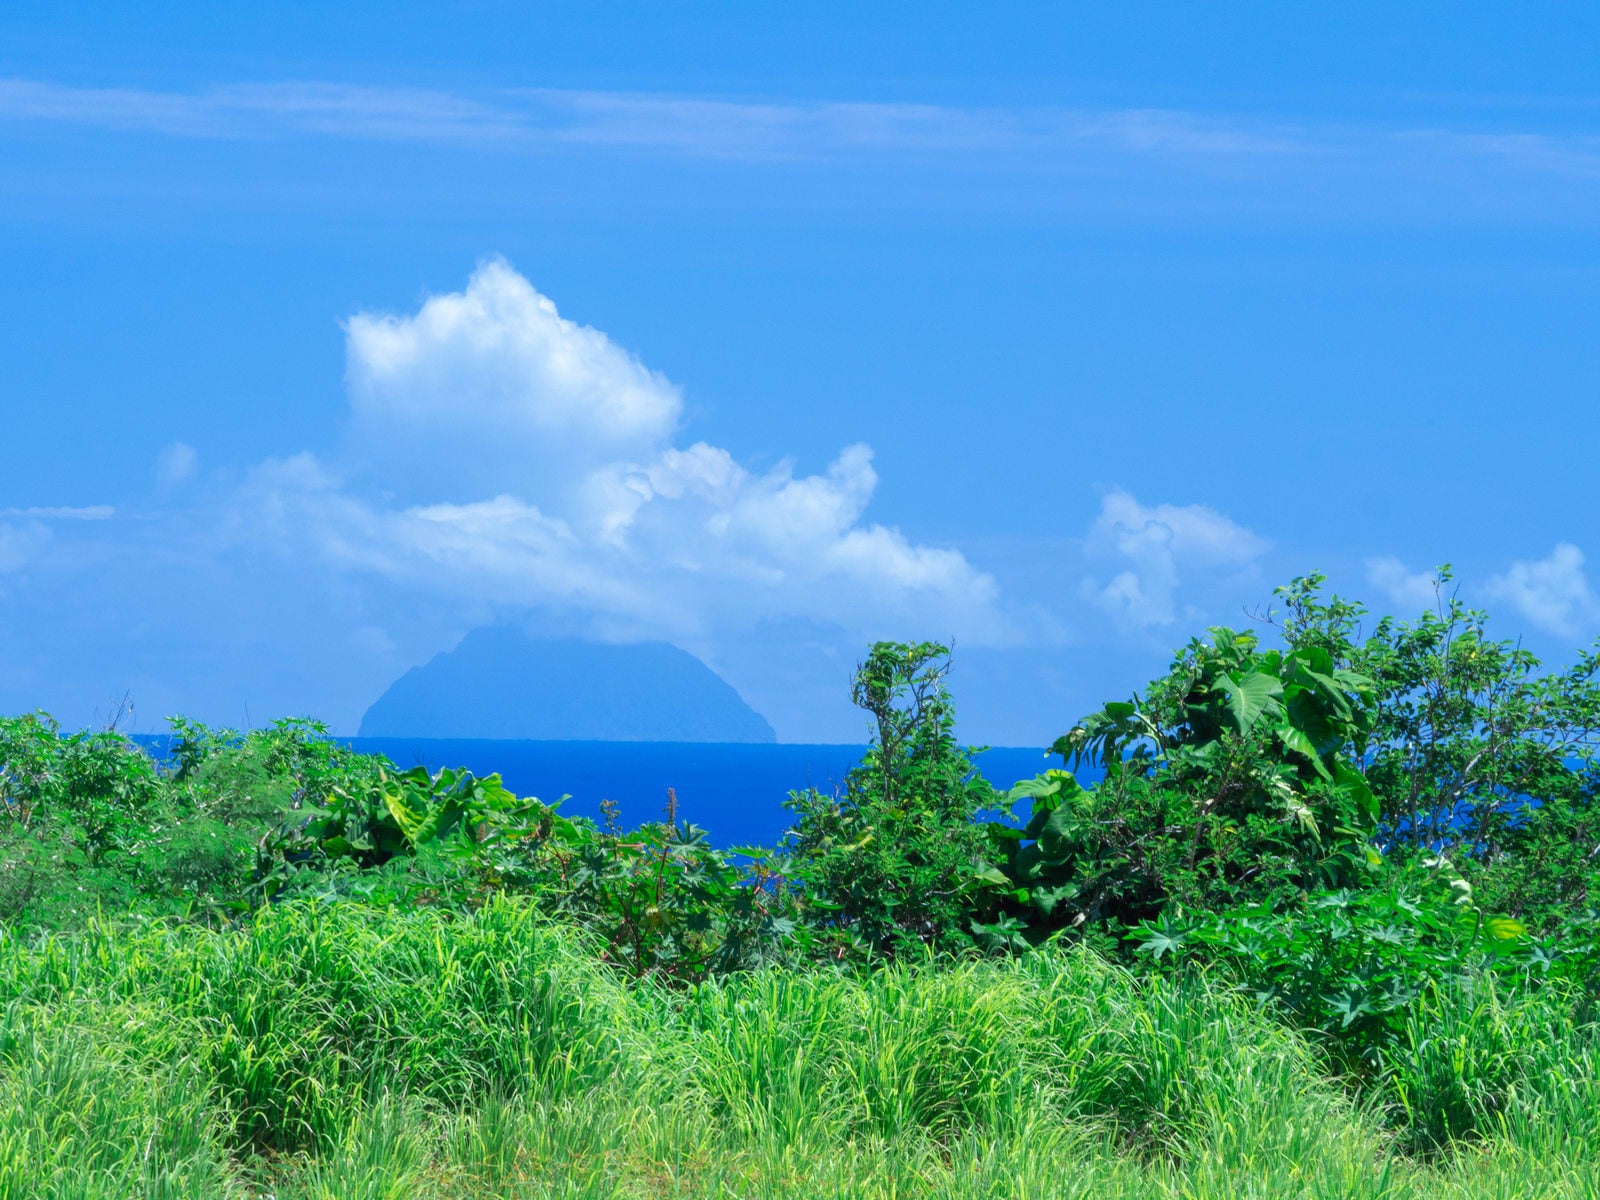 「鬱蒼と茂る草木の向こう見える南硫黄島」の写真